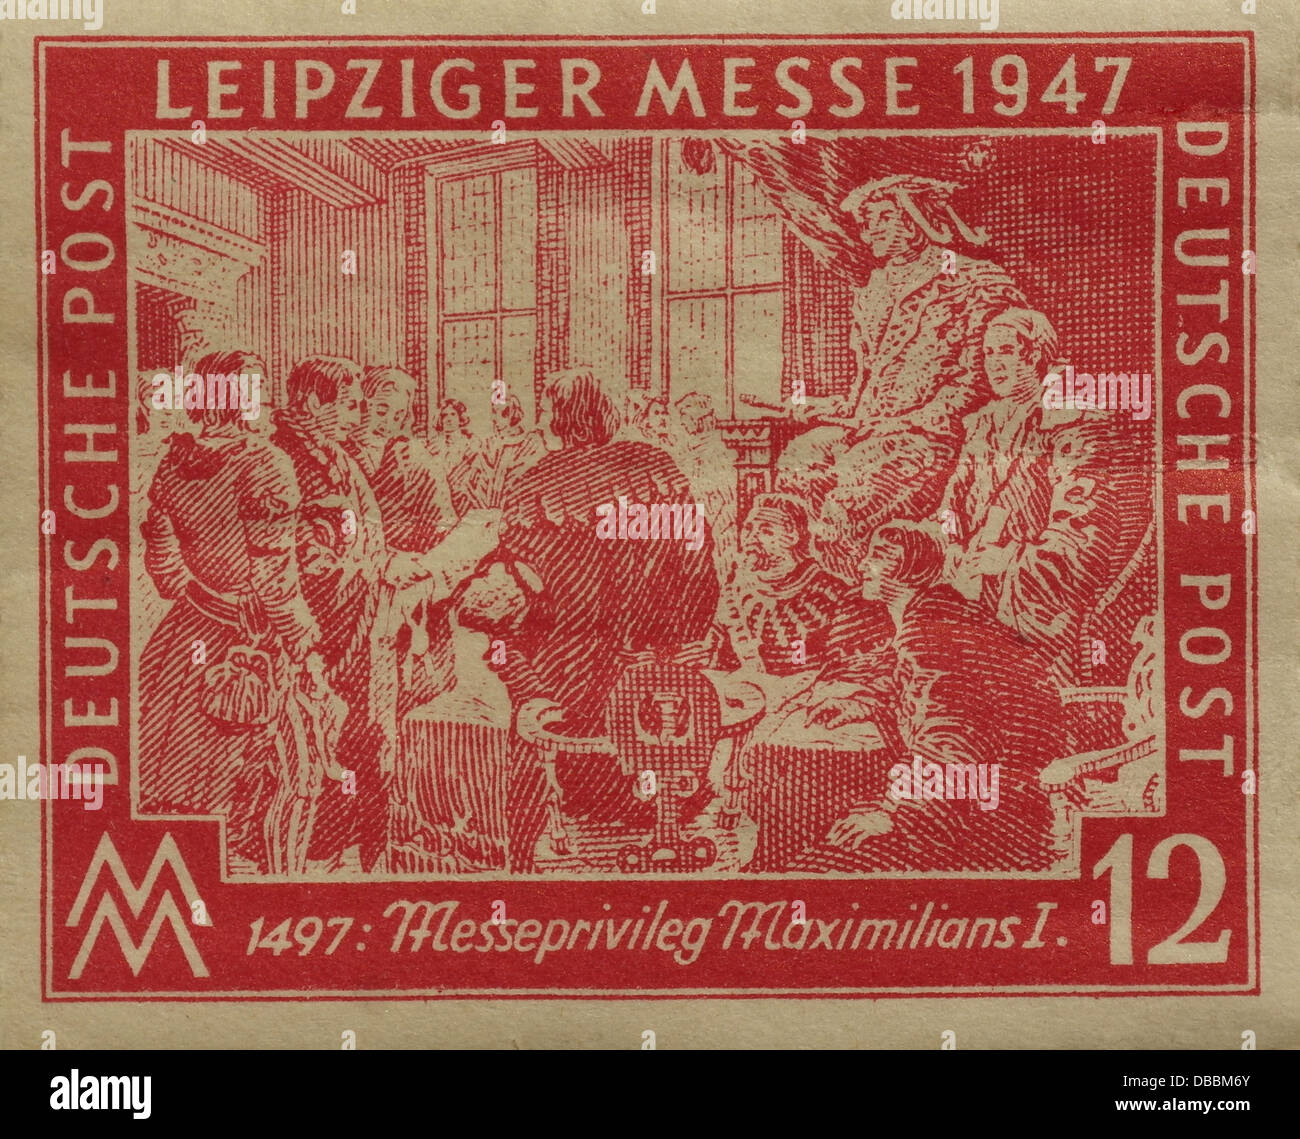 Rot 12 Pfennig Briefmarke Datiert 1947 Zeigt Kaiser Maximilian